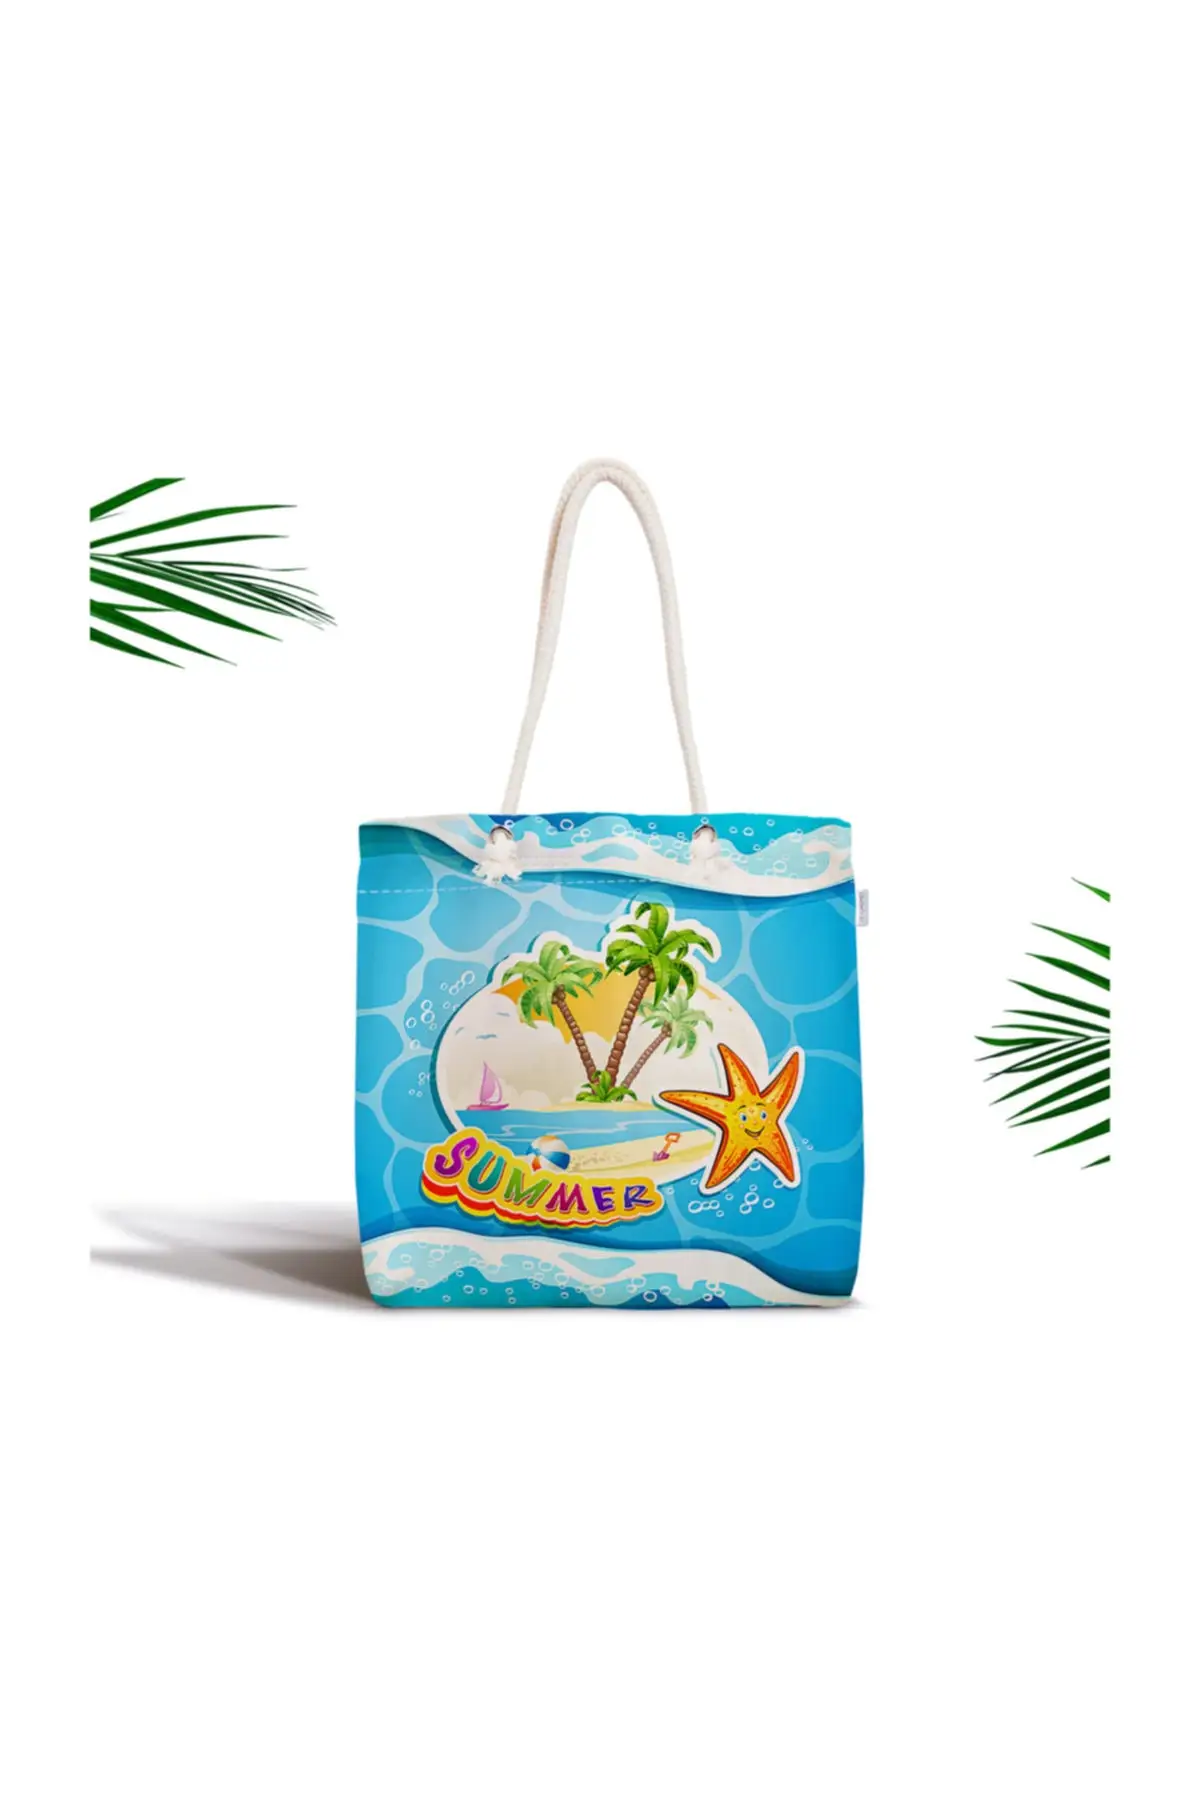 

Женская пляжная сумка из ткани на молнии с цифровым принтом и летним рисунком на синем фоне, сумка-тоут, летние сумки для покупок